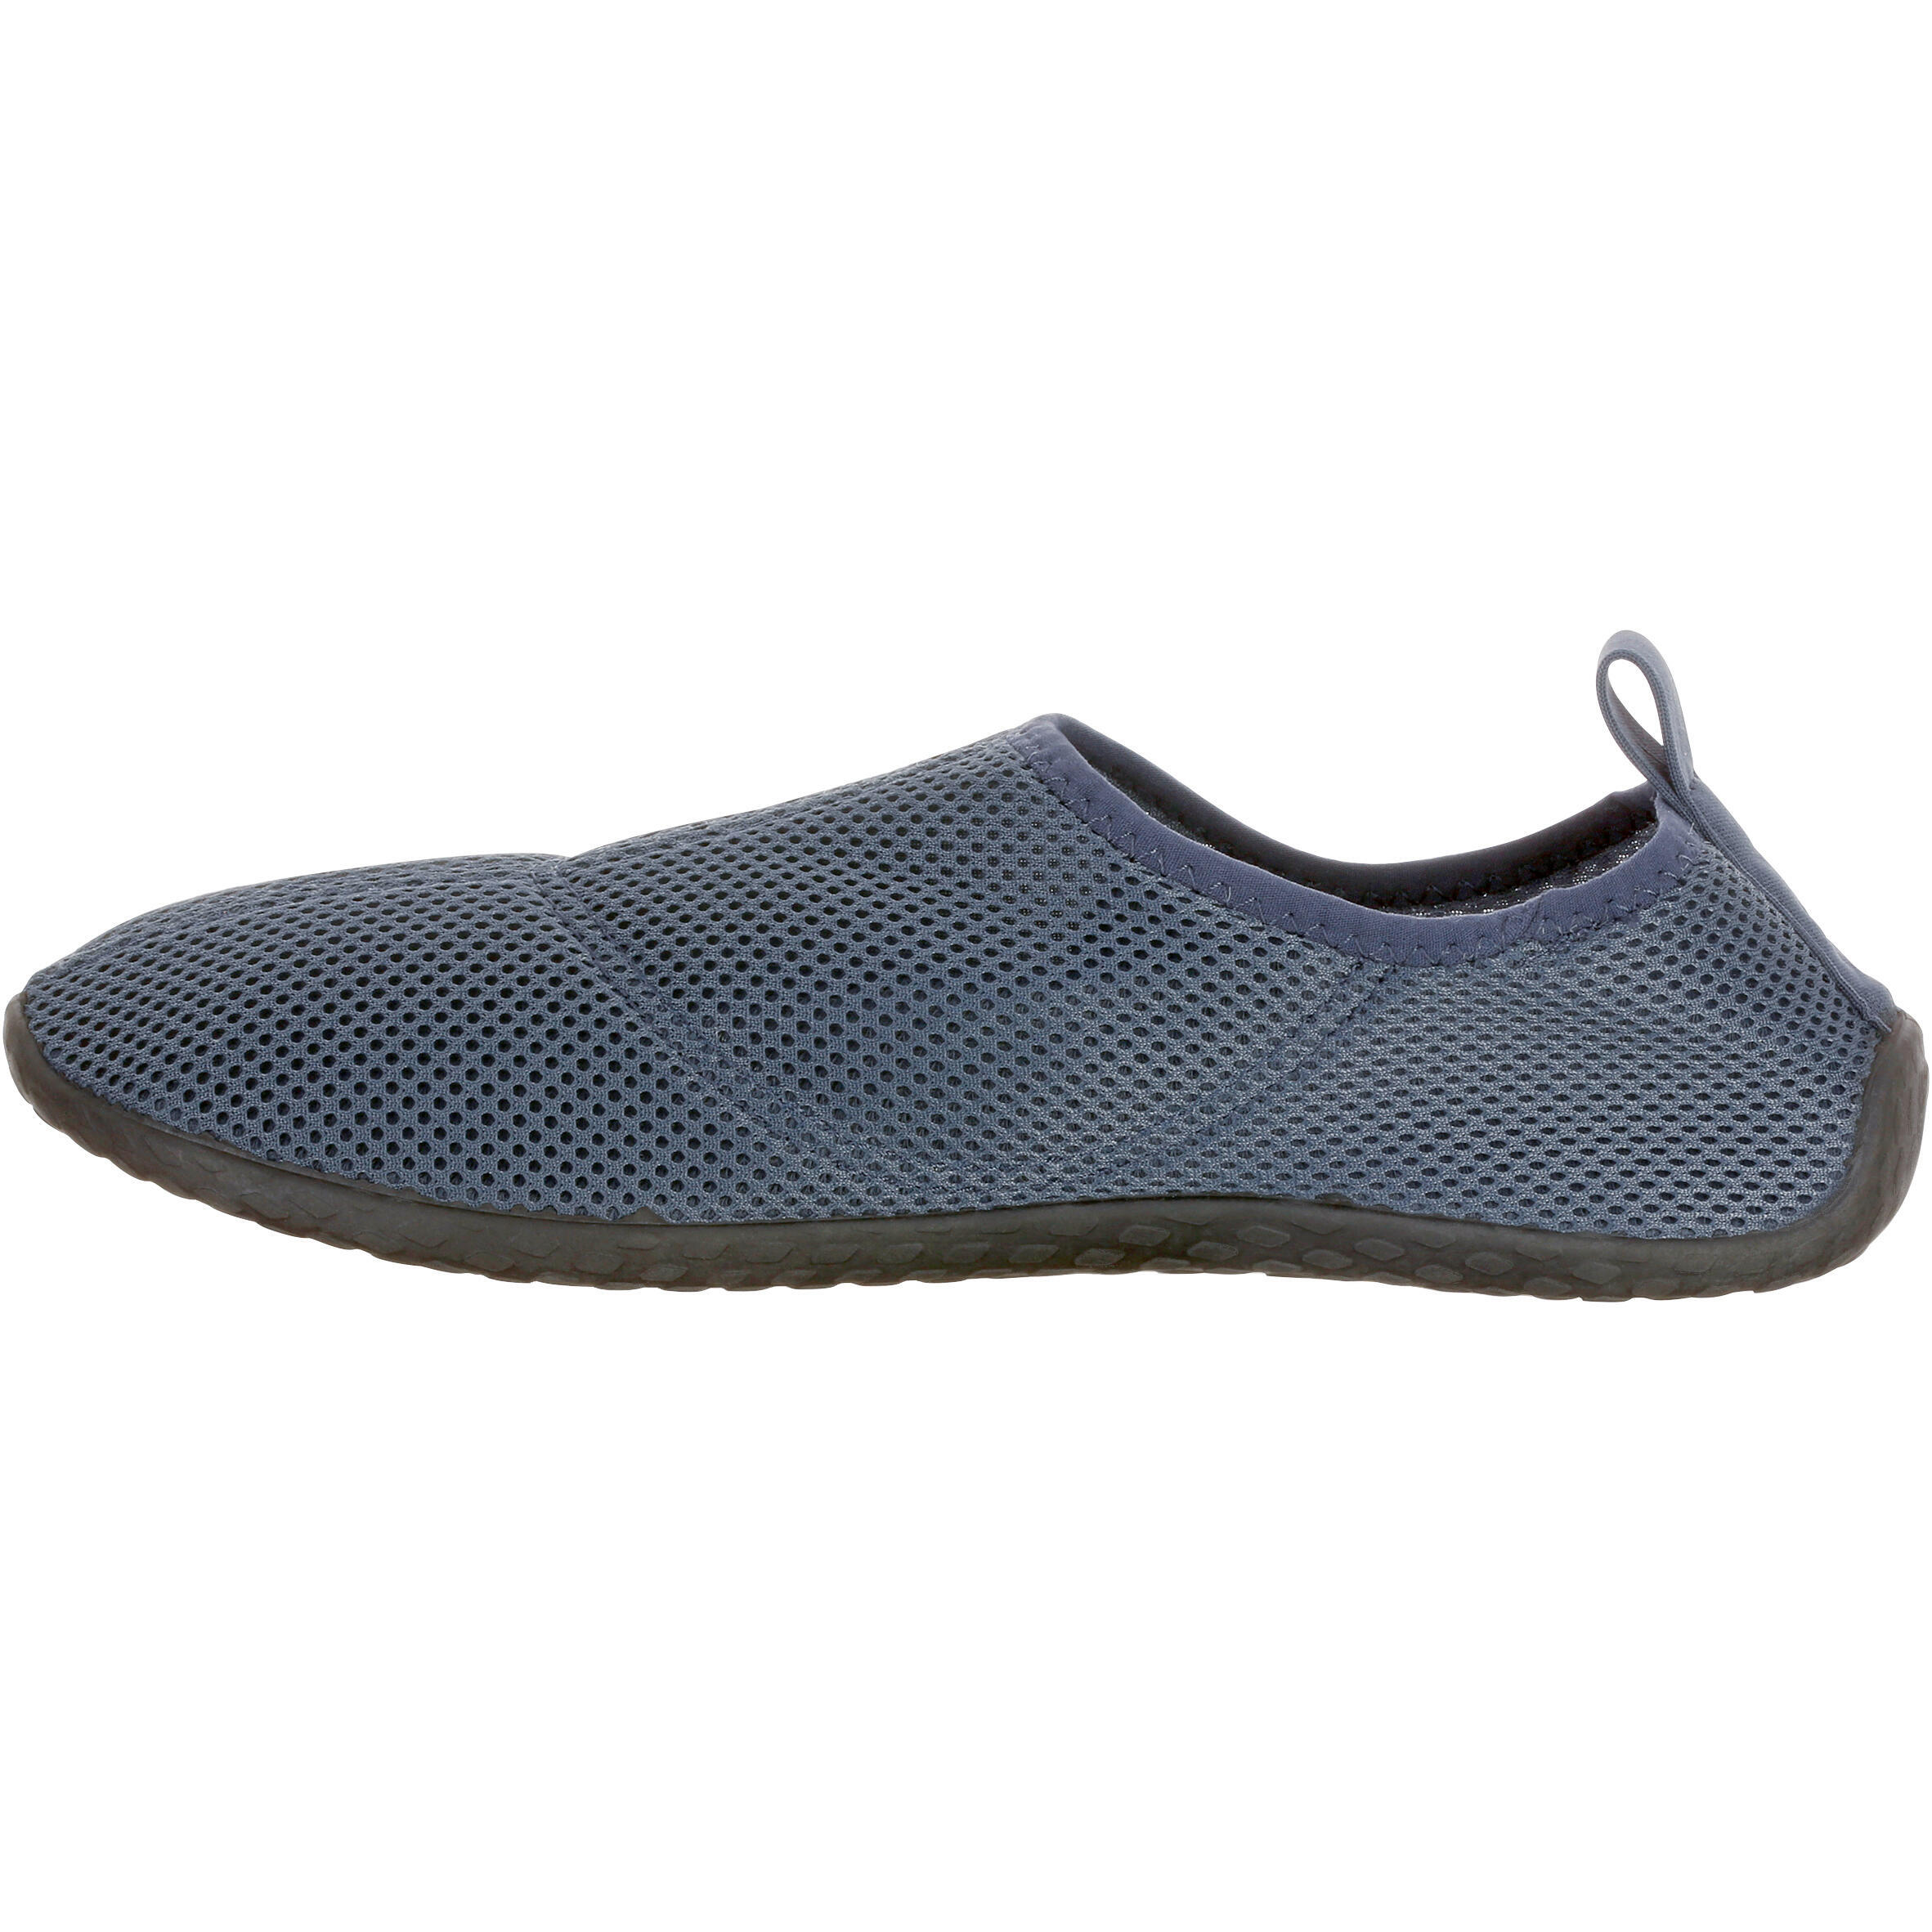 Aquashoes for Adults - Aquashoes 100 Grey 3/7